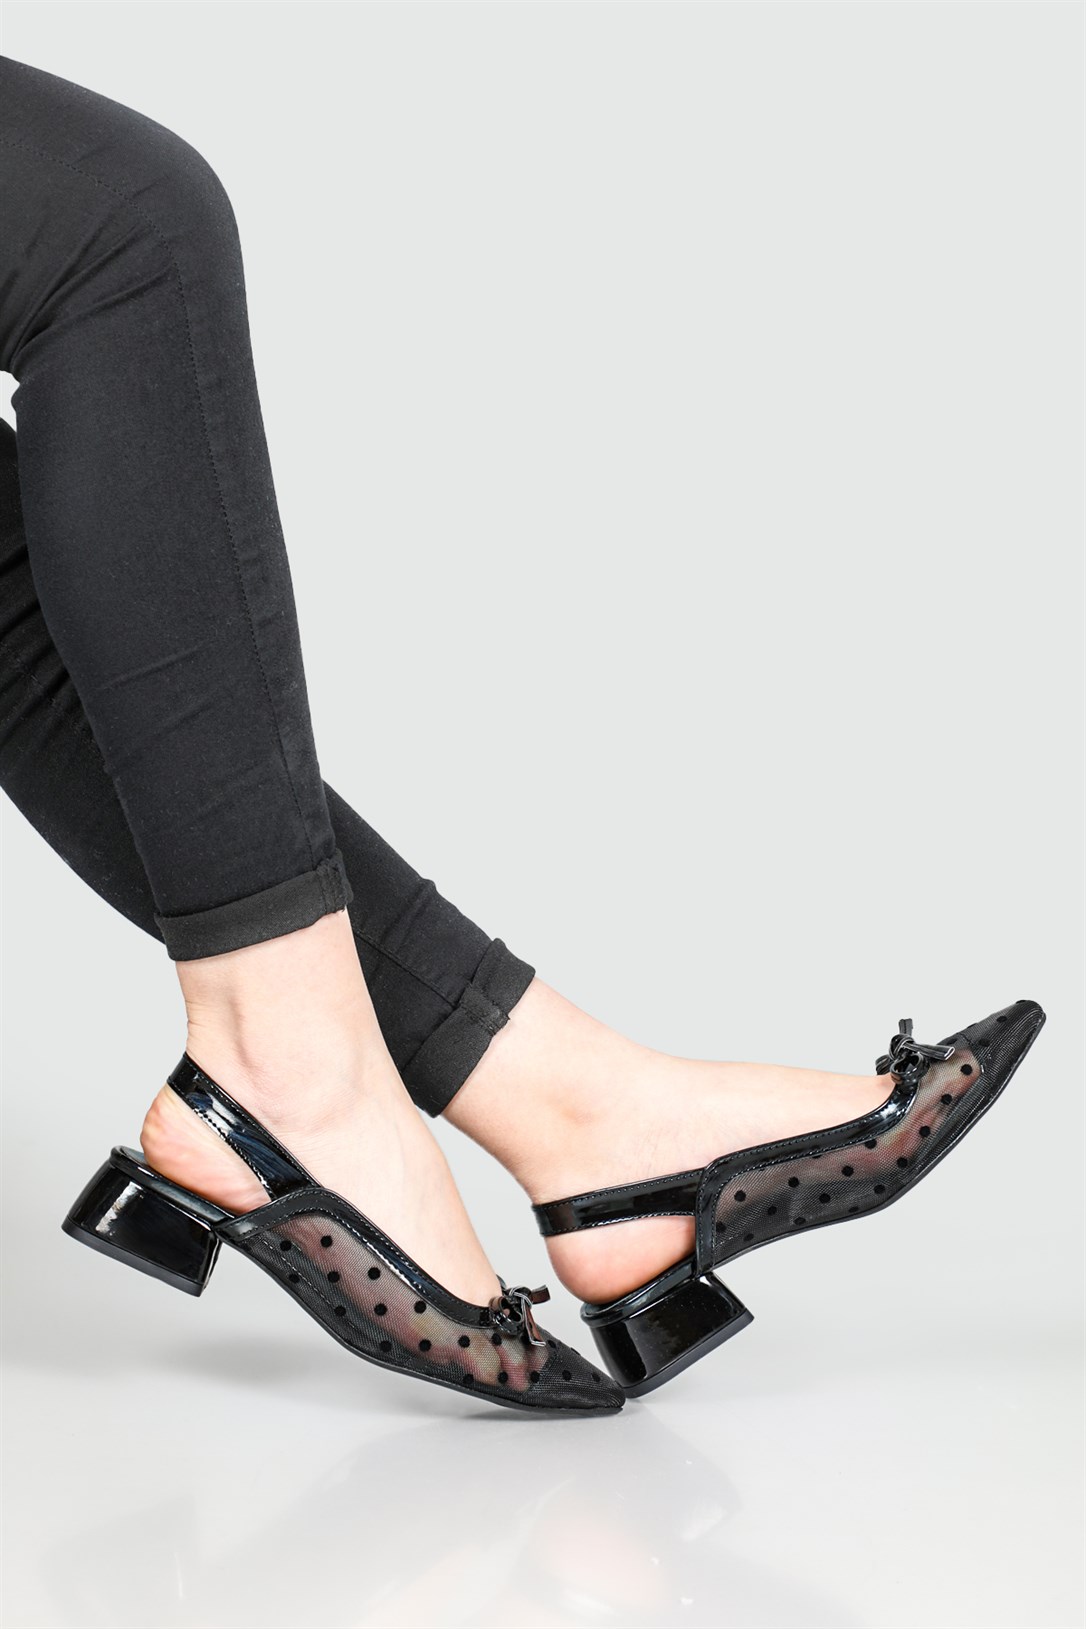 Serap Arkası Açık Tül Detaylı Benekli Fiyonklu 5 cm Topuklu Siyah Rugan  Kadın Ayakkabı 103